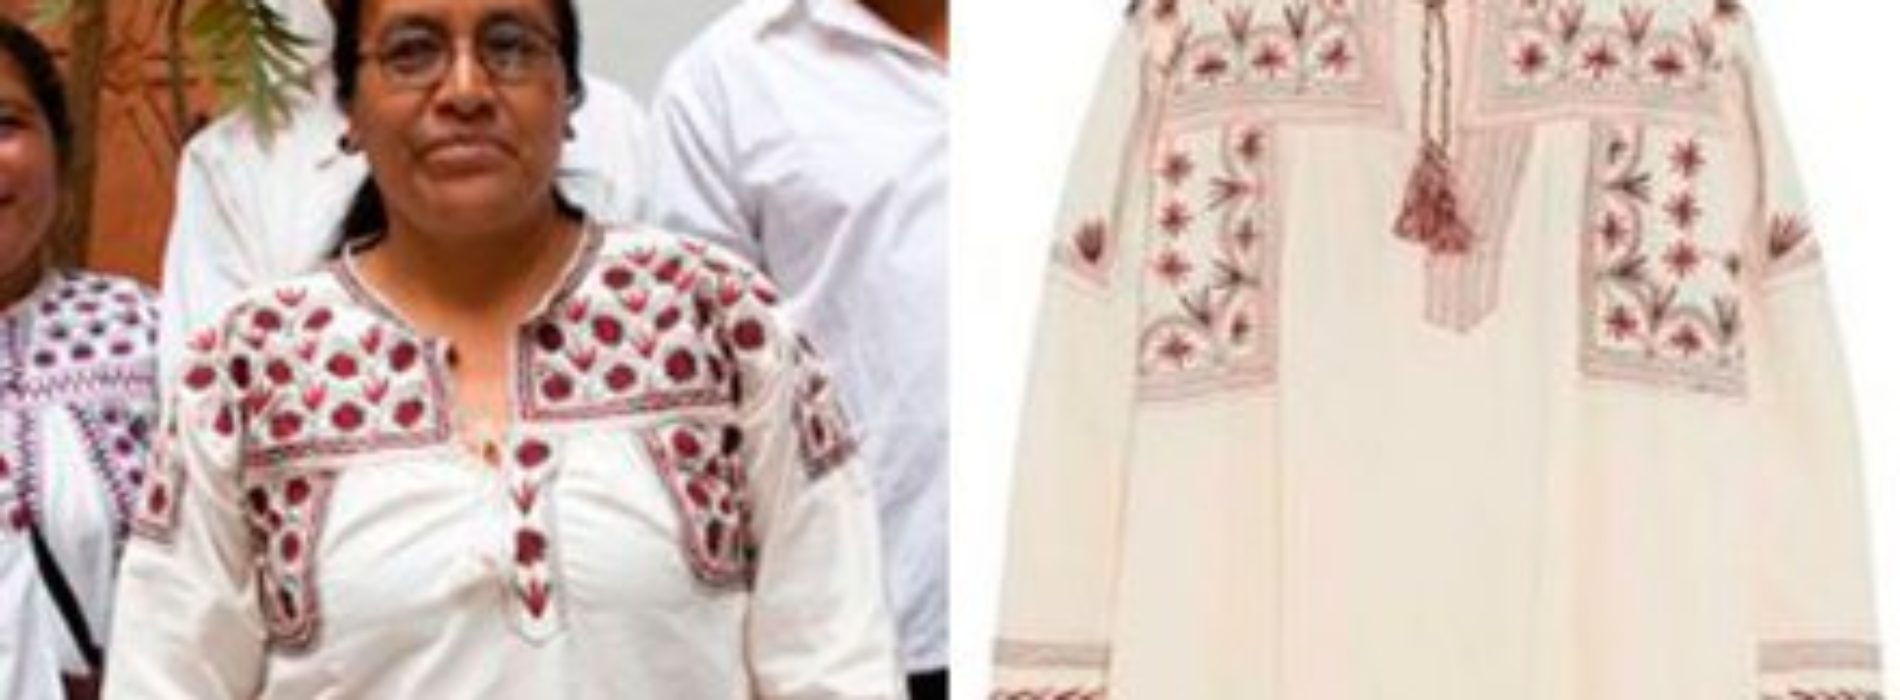 Diseñadora francesa plagia el patrón de blusas de la #comunidadmixe